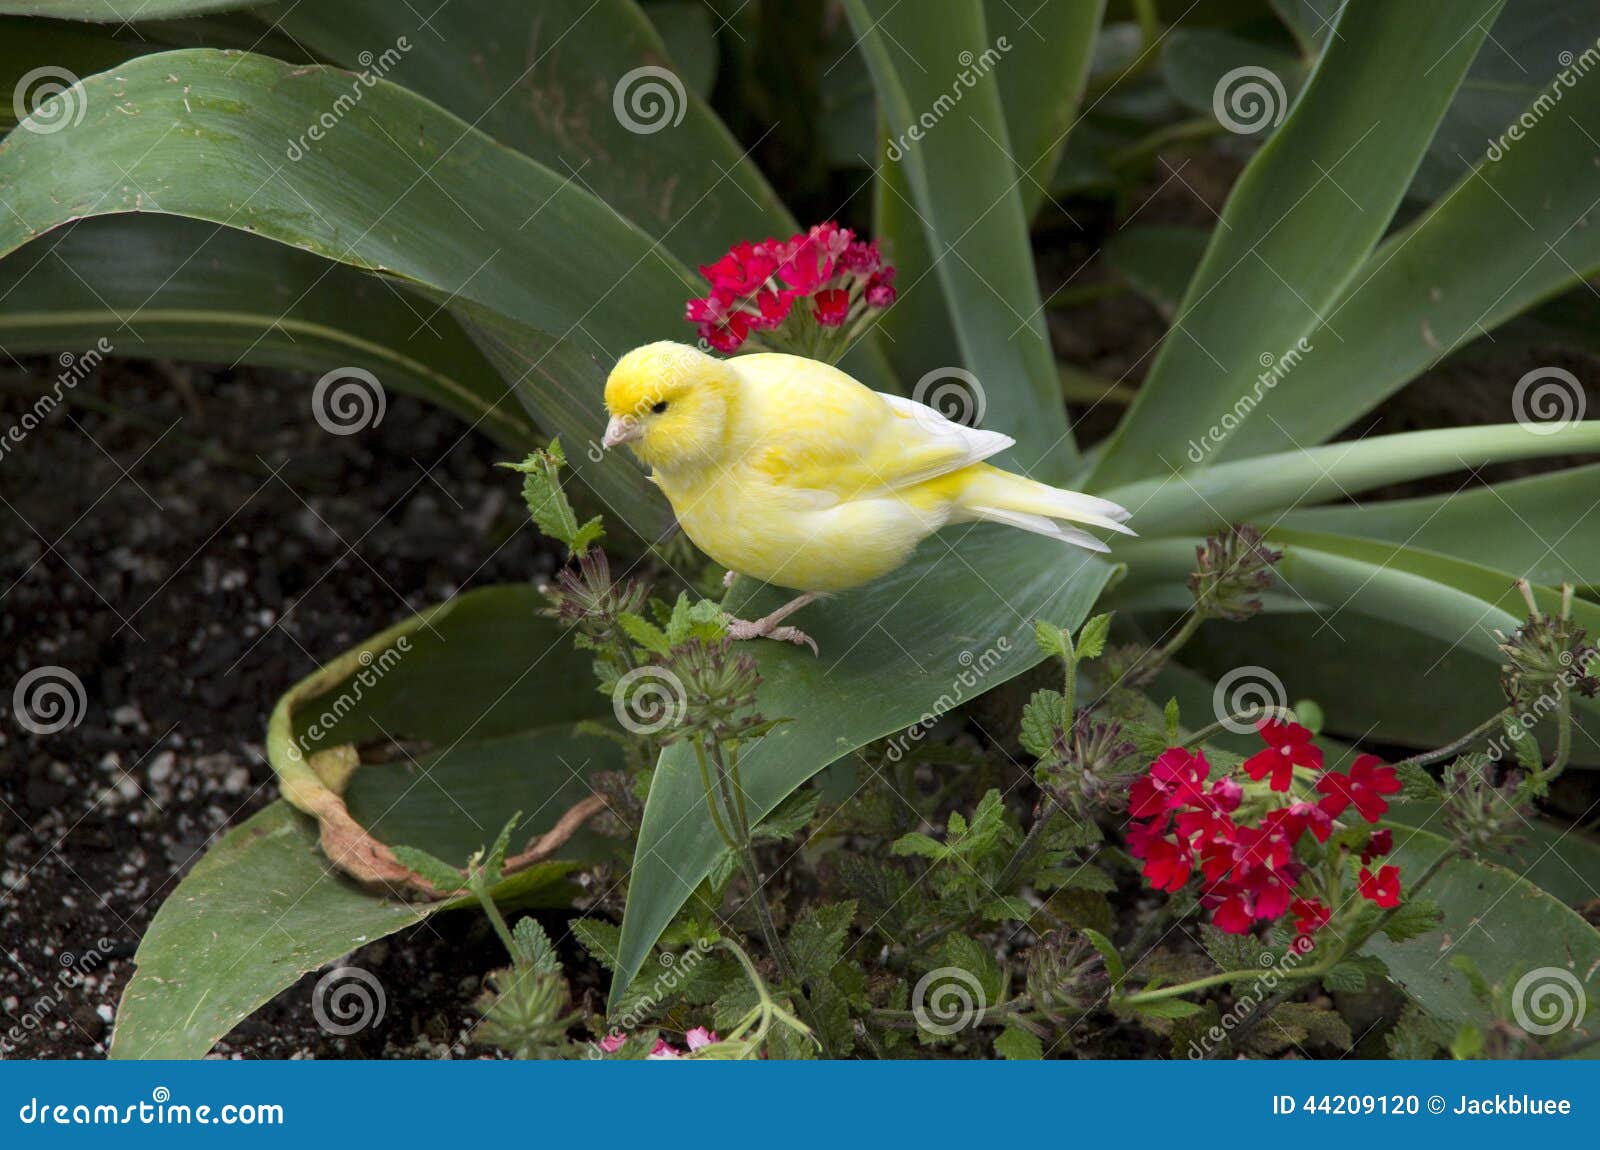 subtropical garden bird